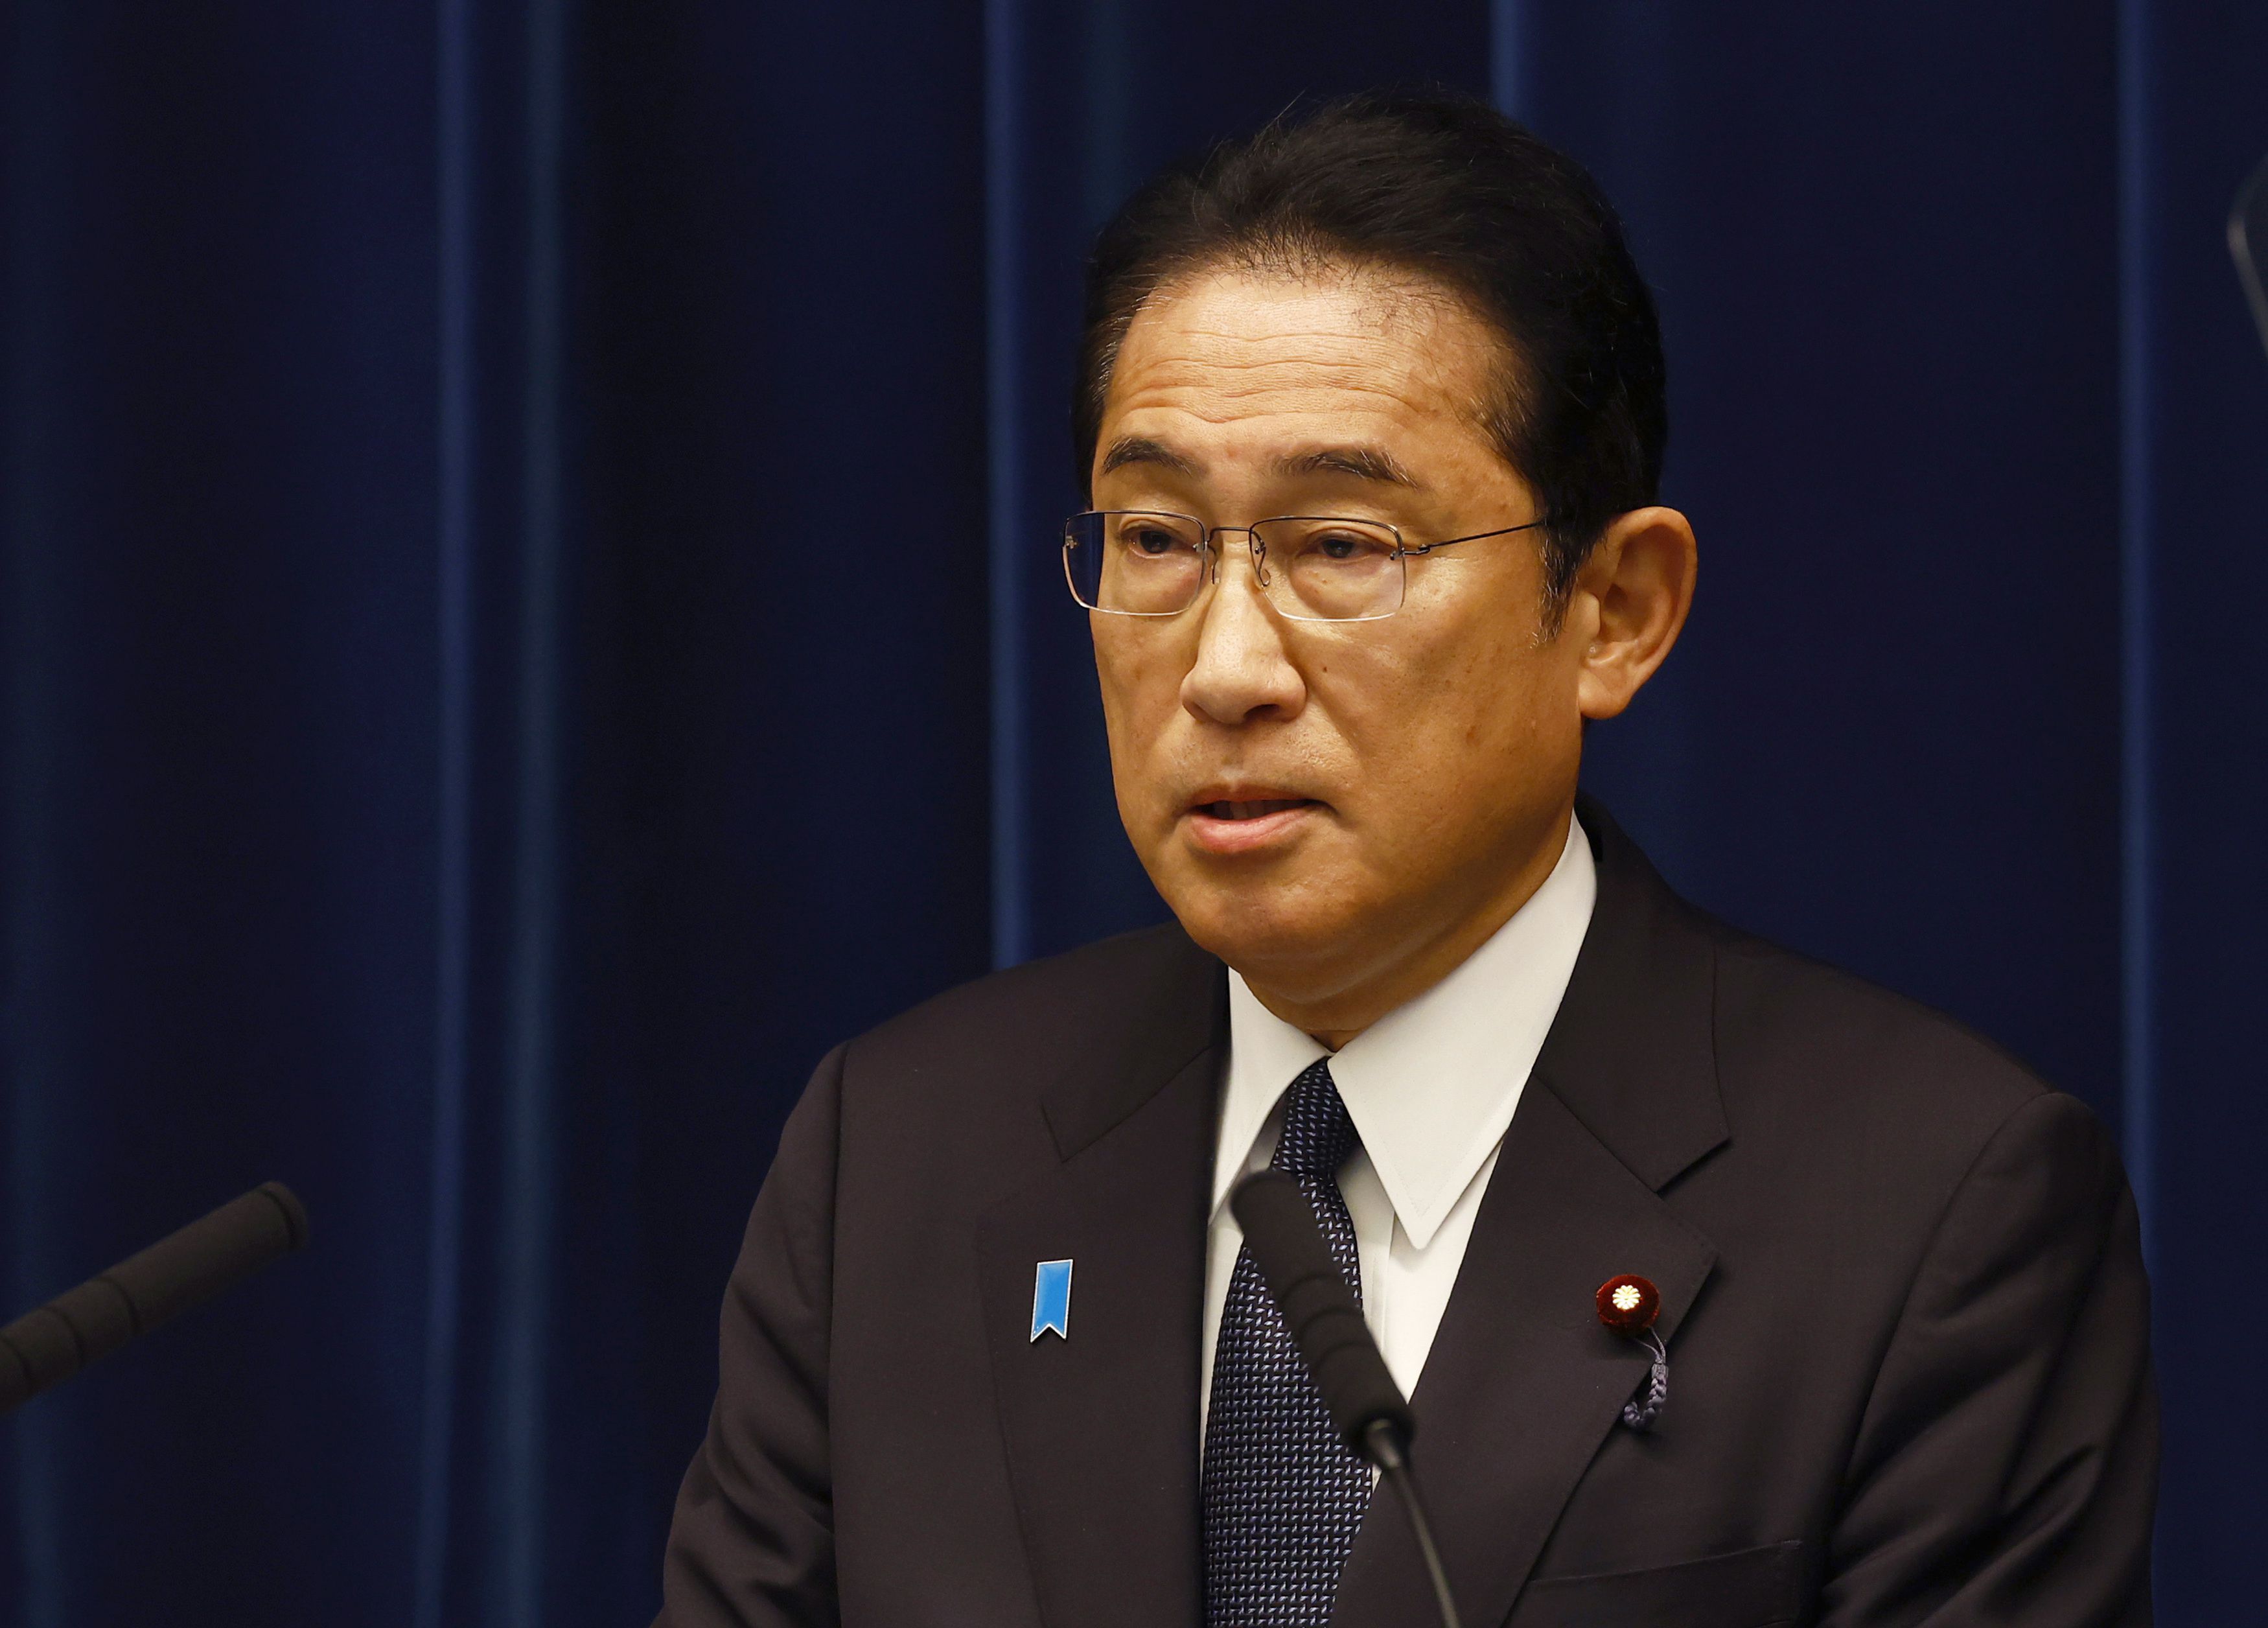 El primer ministro japonés, Fumio Kishida, en una rueda de prensa el 4 de agosto de 2023. EFE/EPA/KIM KYUNG-HOON / POOL

